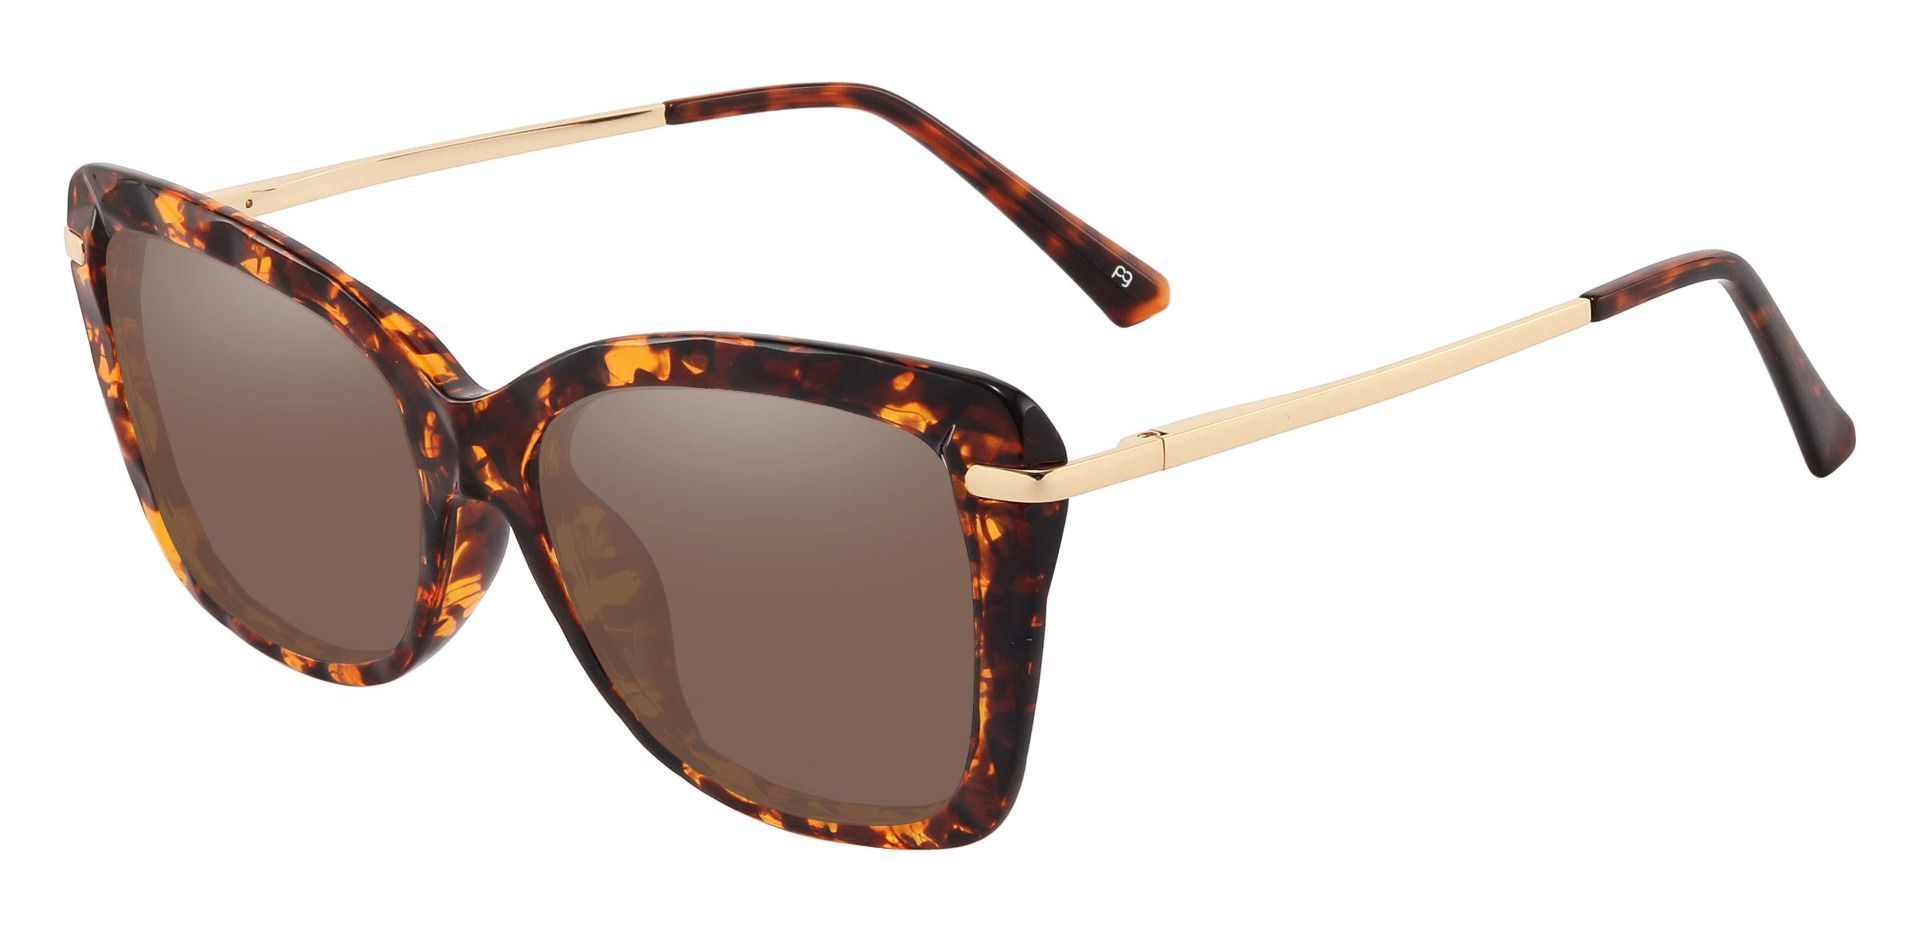 Shoshanna Rectangle Progressive Sunglasses - Tortoise Frame With Brown Lenses